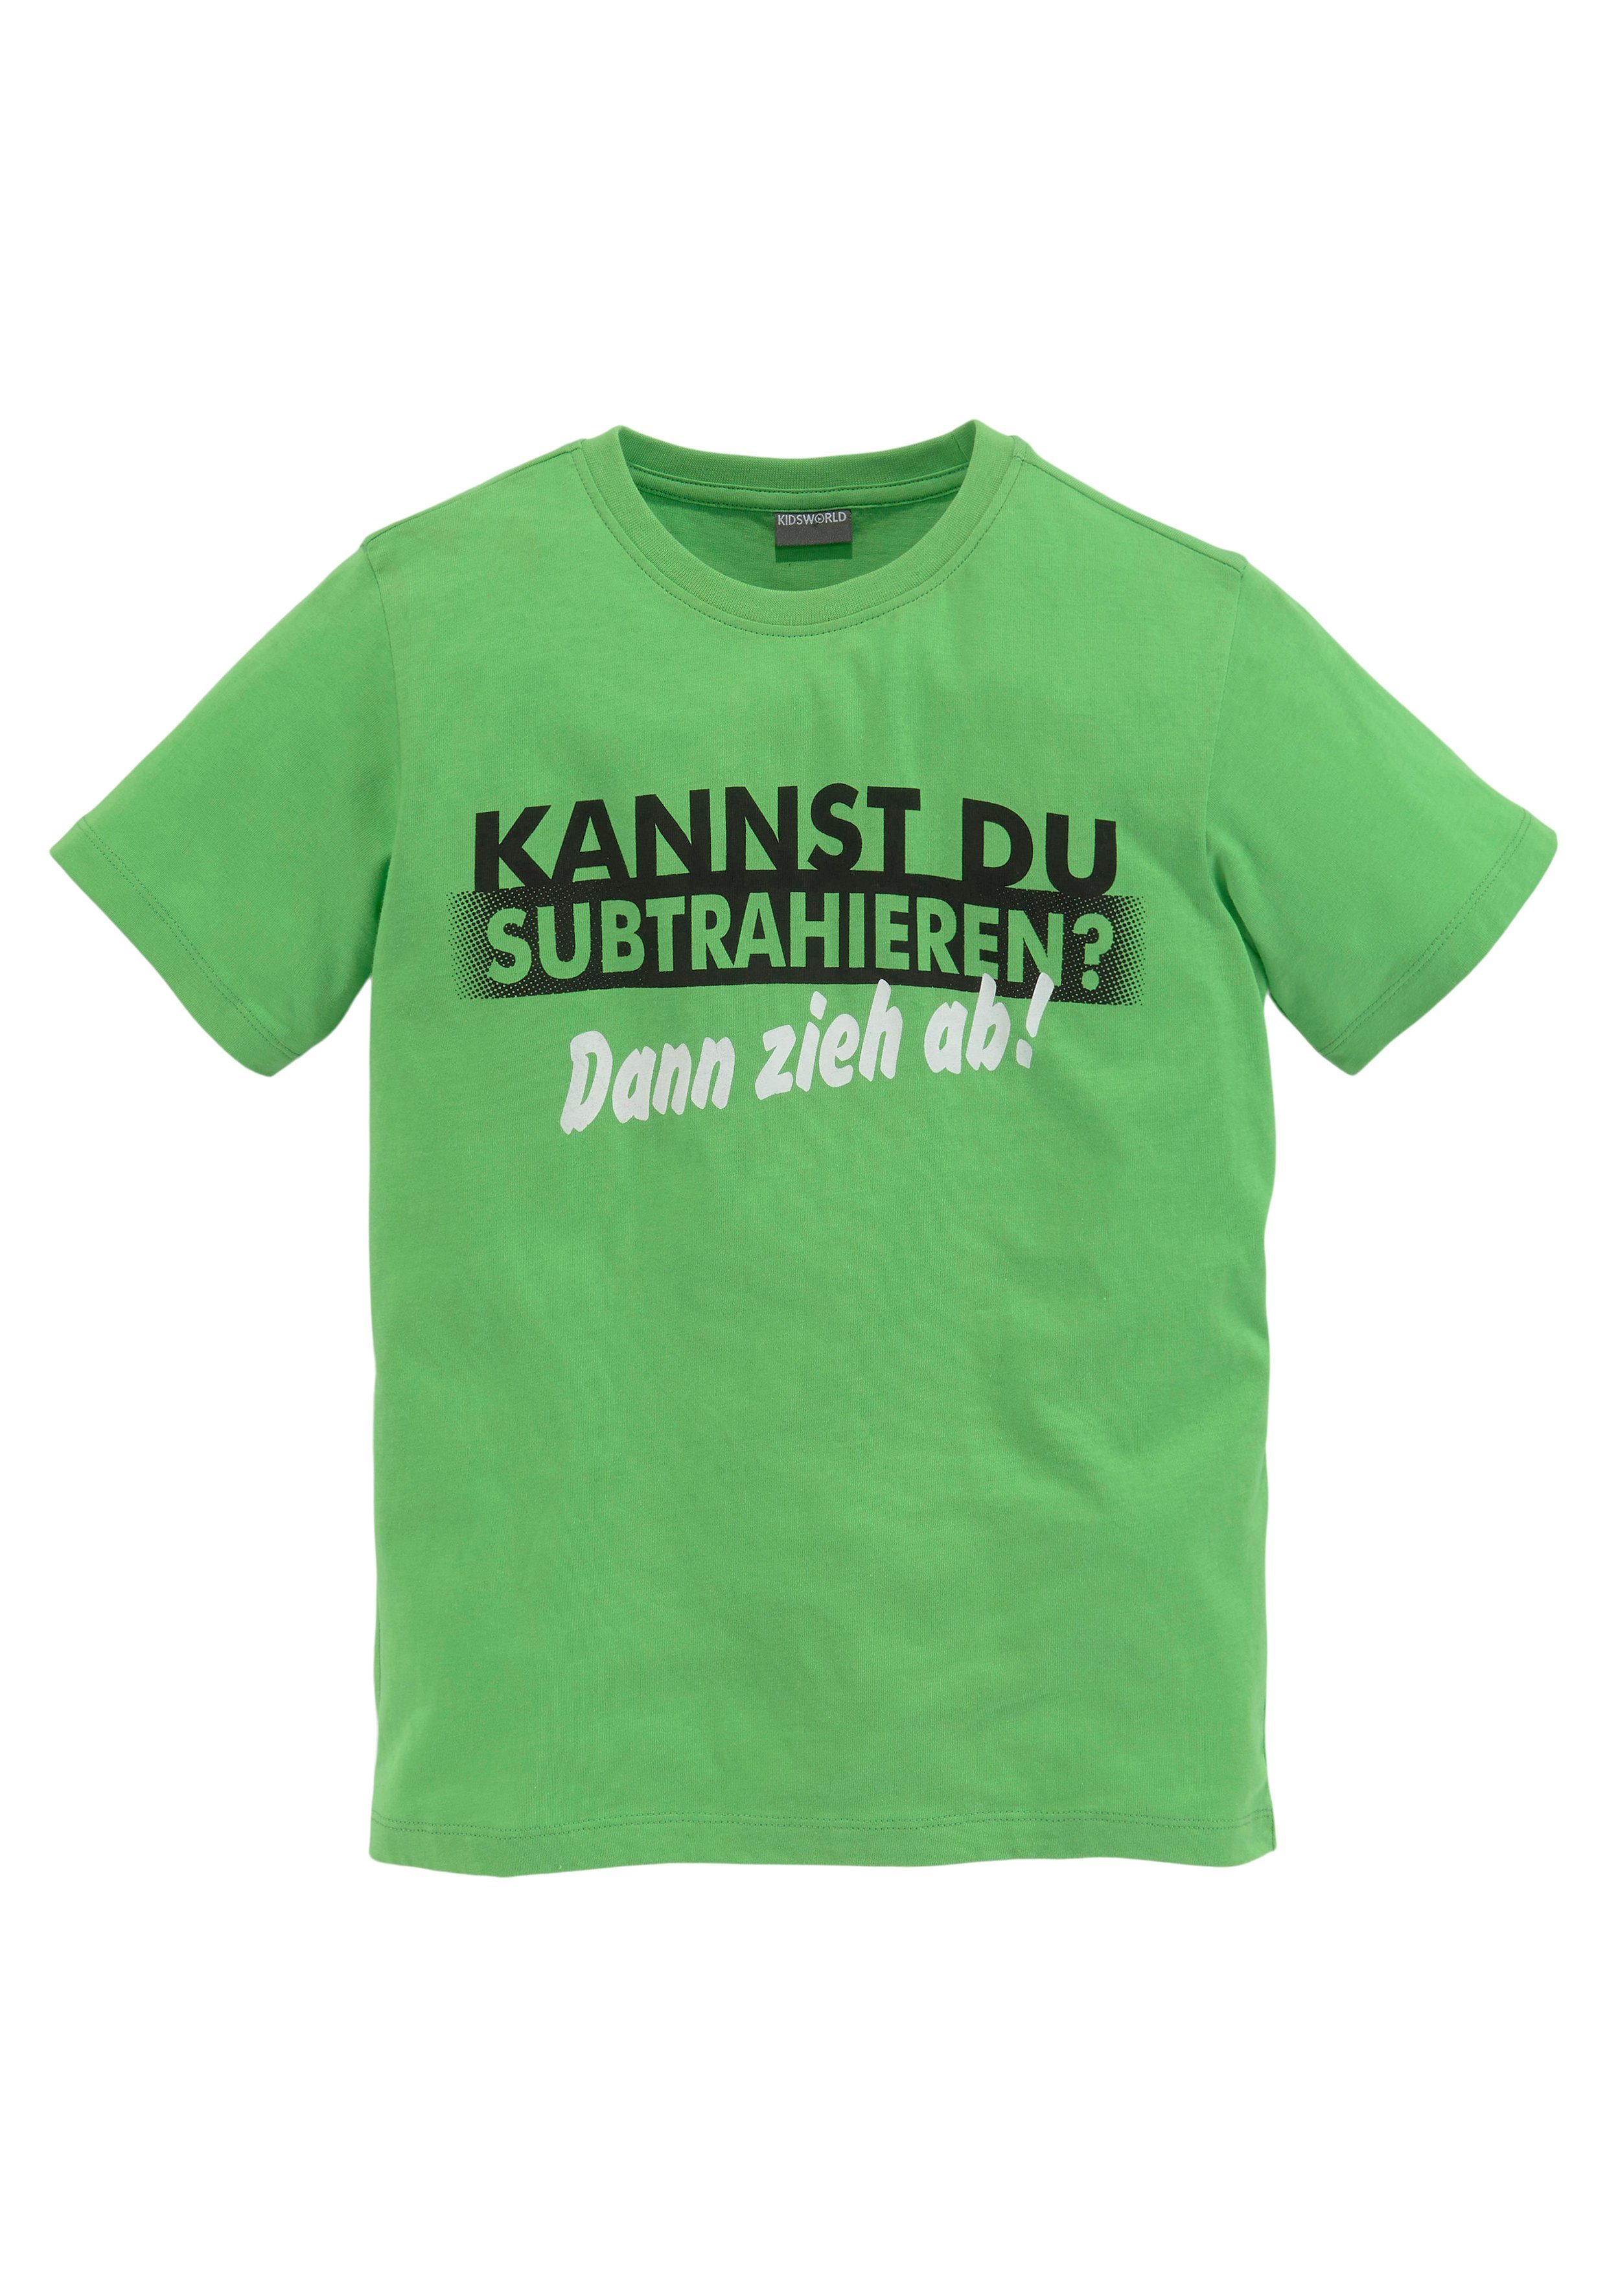 KIDSWORLD KANNST Spruch DU SUBTRAHIEREN?, T-Shirt